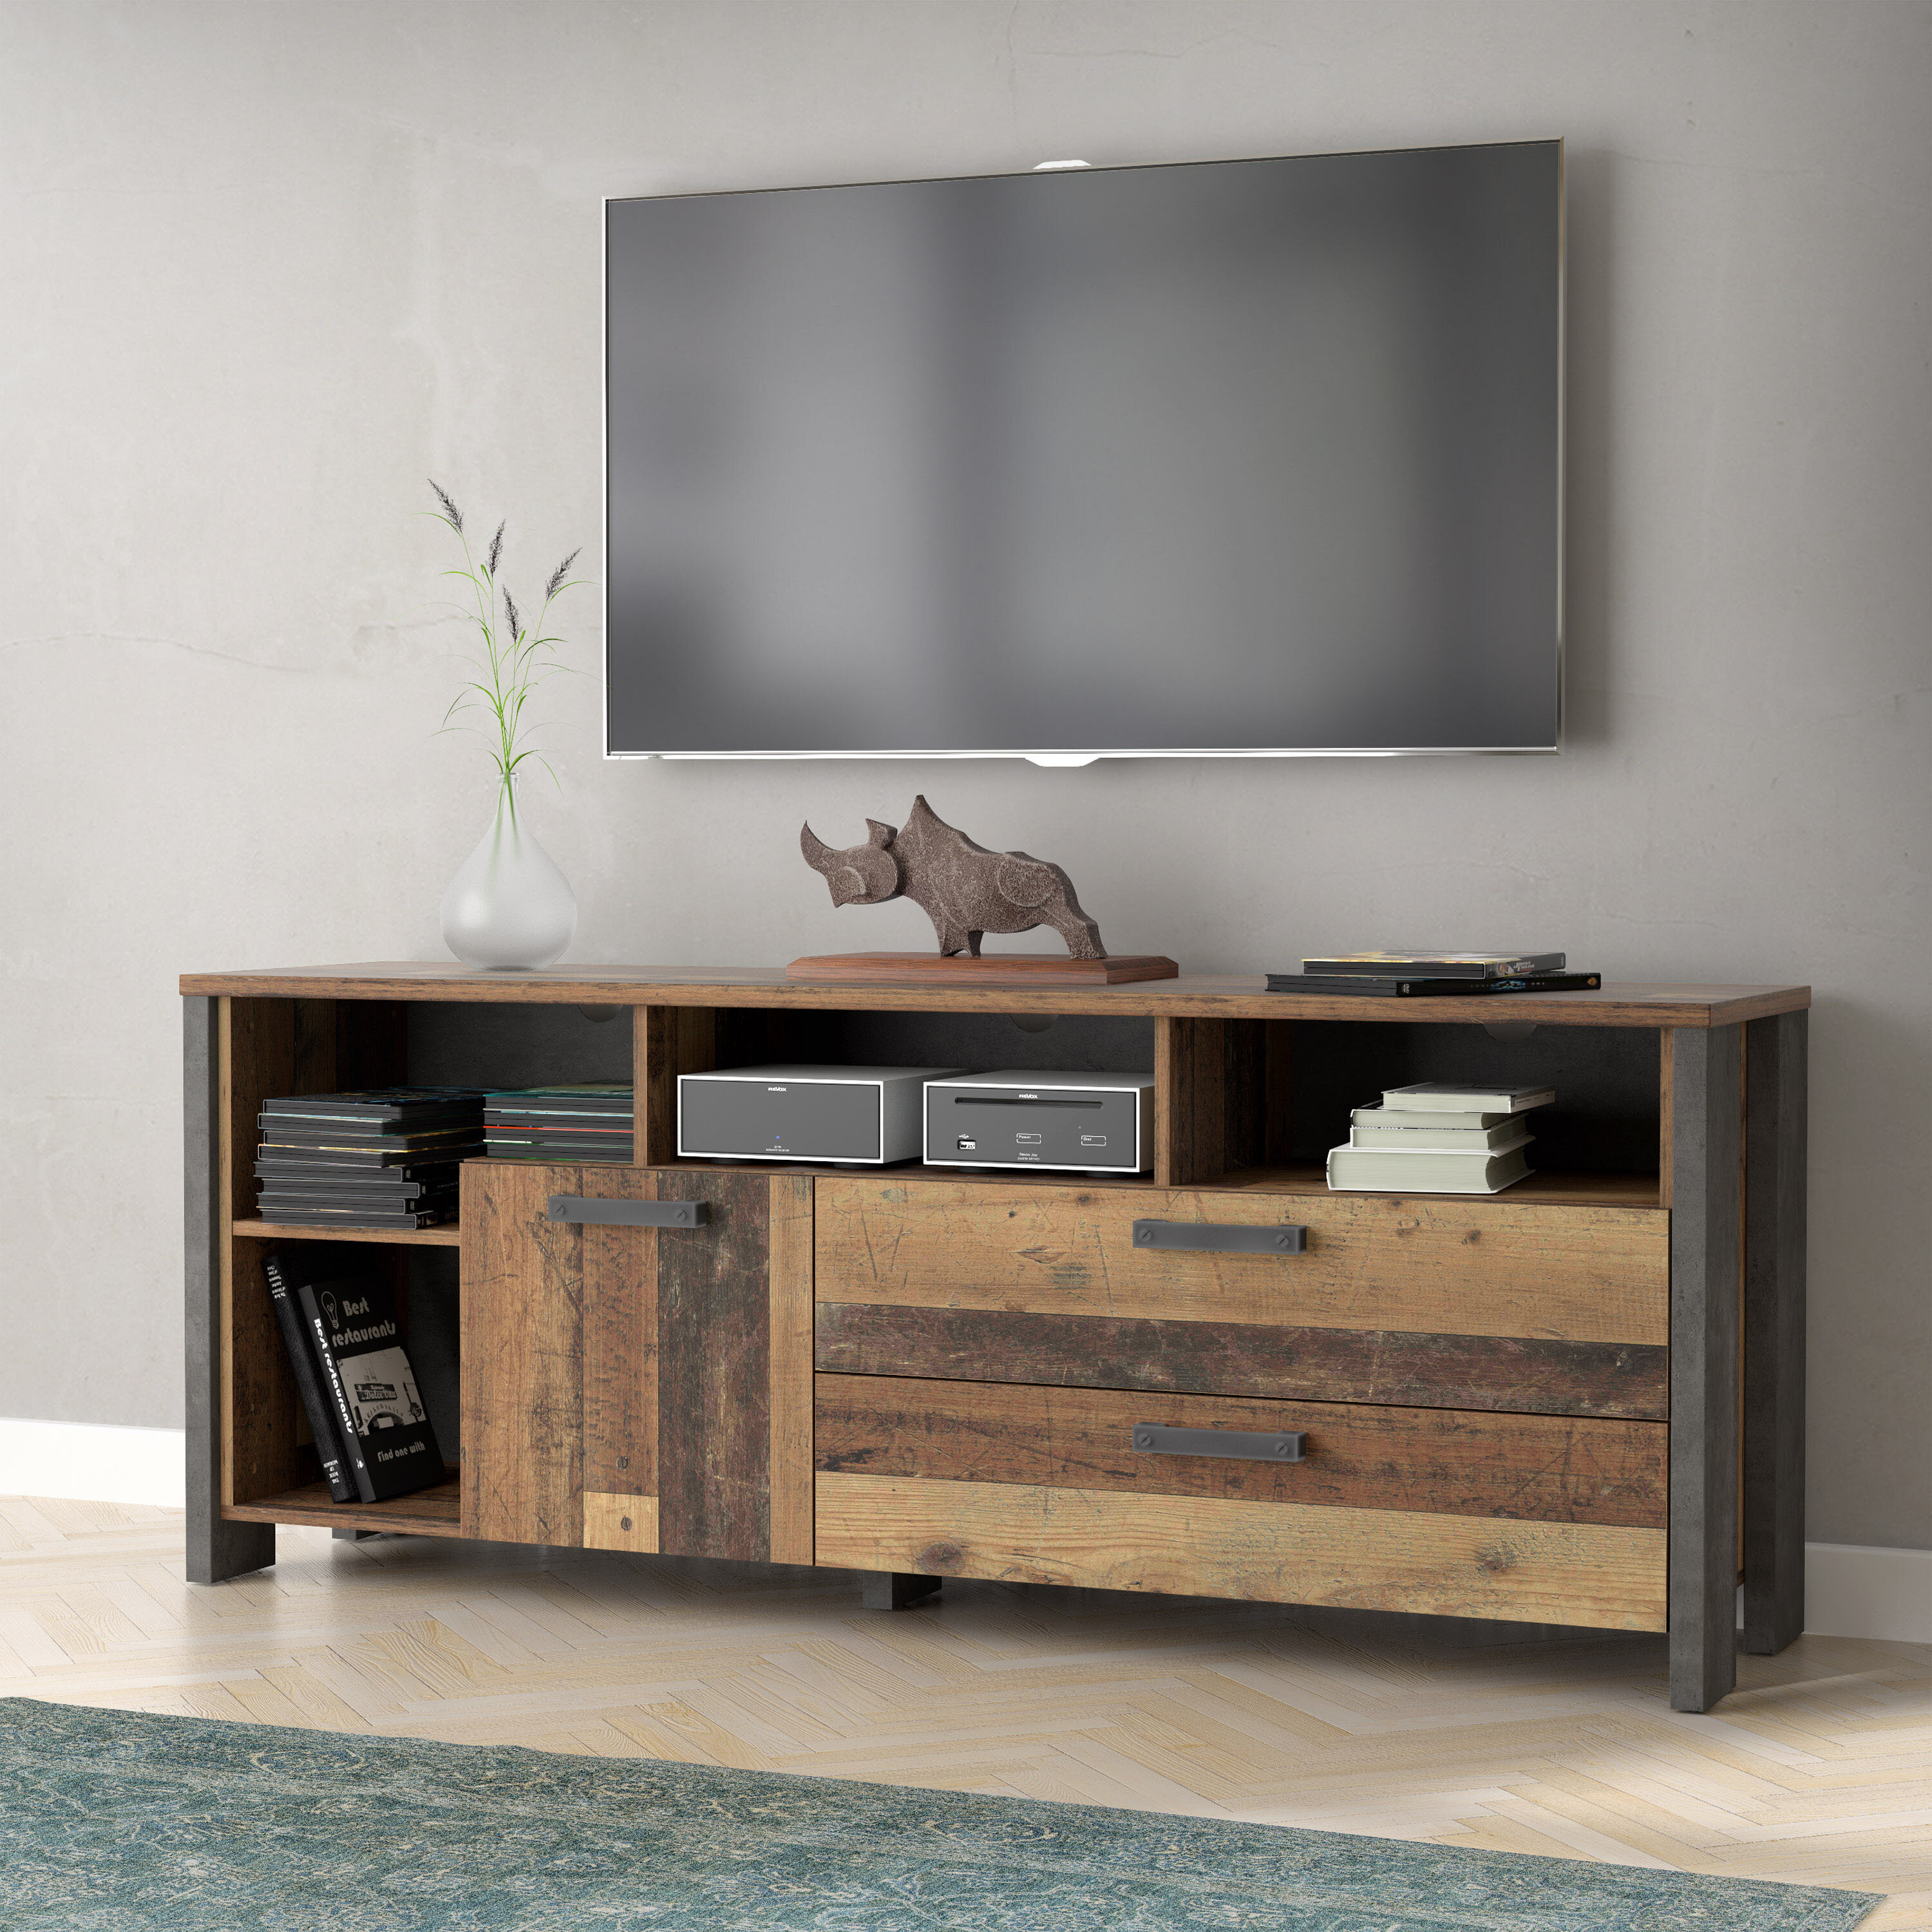 Industrie-Design HOOBRO TV-Tisch für Fernseher bis 43 Zoll leicht zu montieren Lowboard Fernsehtisch mit offenen Regalen Wohnzimmer Schlafzimmer TV-Regal mit Schubladen Vintage EBF51DS01 